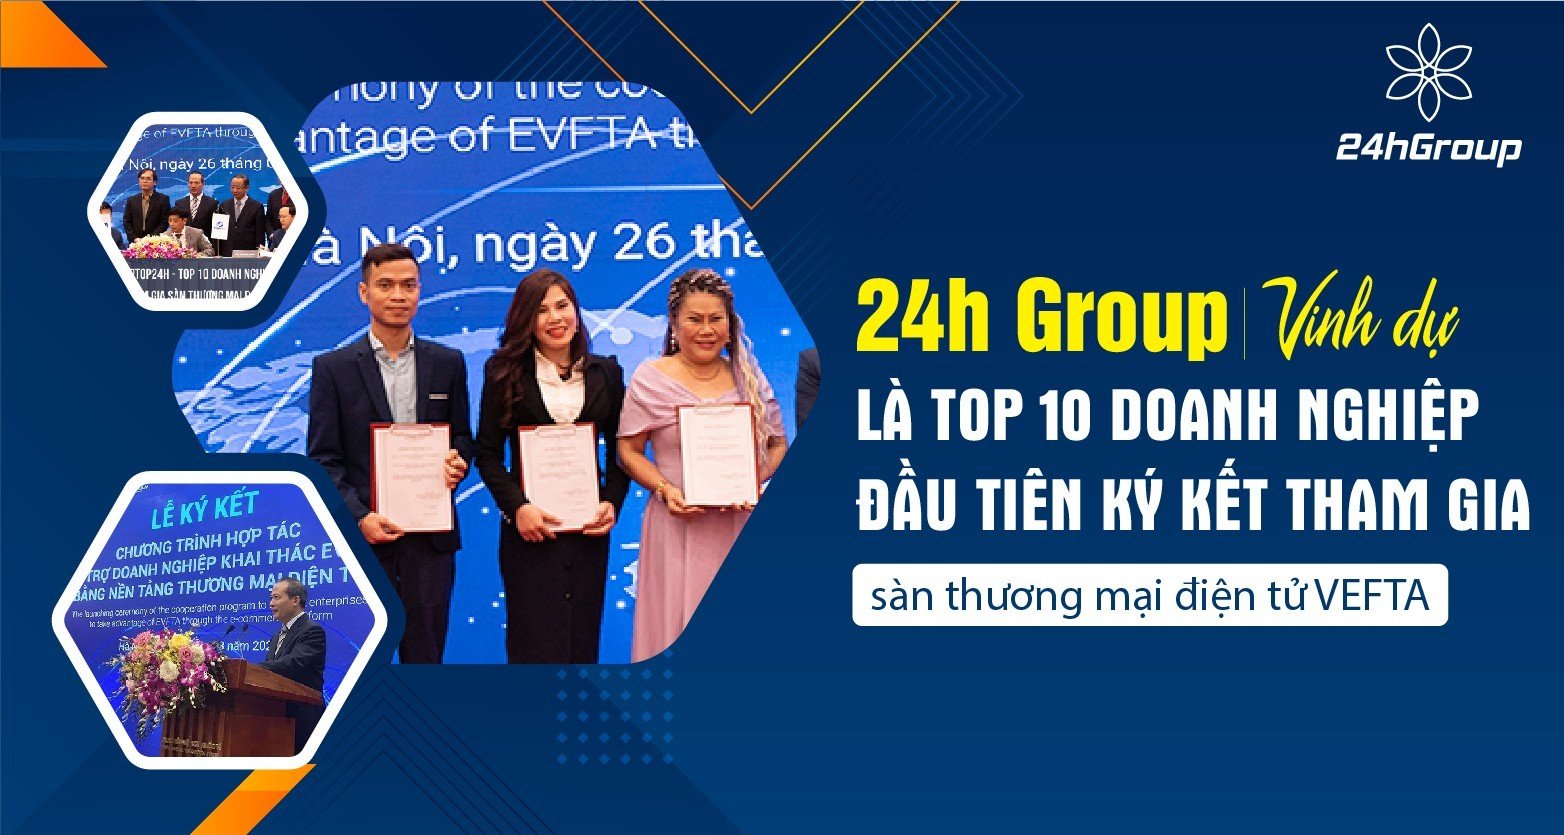 24h Group vinh dự là Top 10 doanh nghiệp đầu tiên ký kết tham gia sàn thương mại điện tử VEFTA